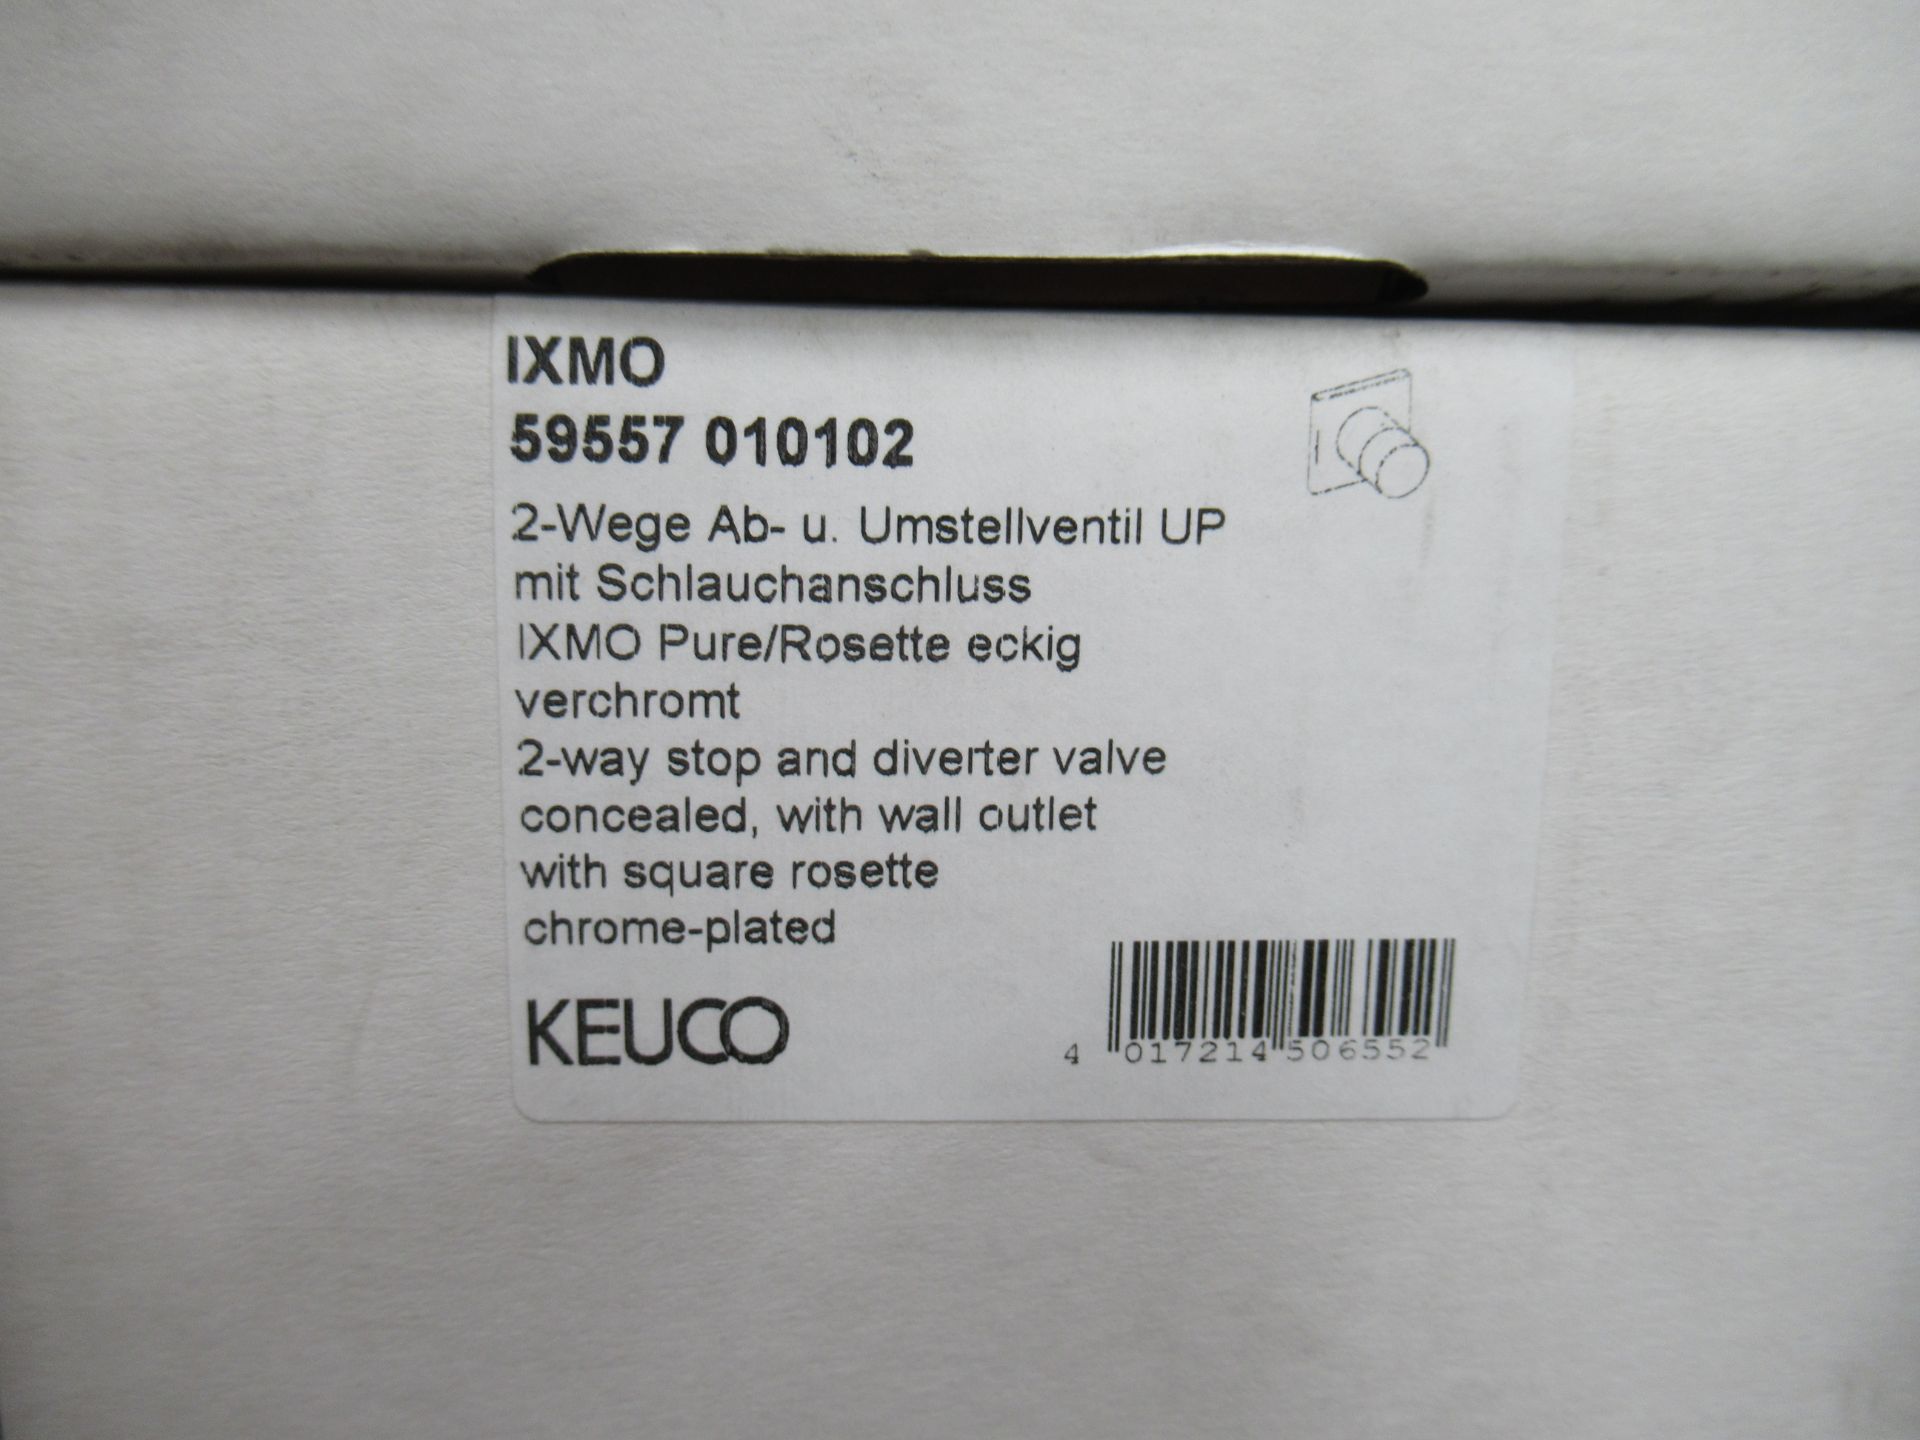 5 x Various Keuco IXMO Stop/Divider Valves (See Photos for descriptions) - Bild 3 aus 6